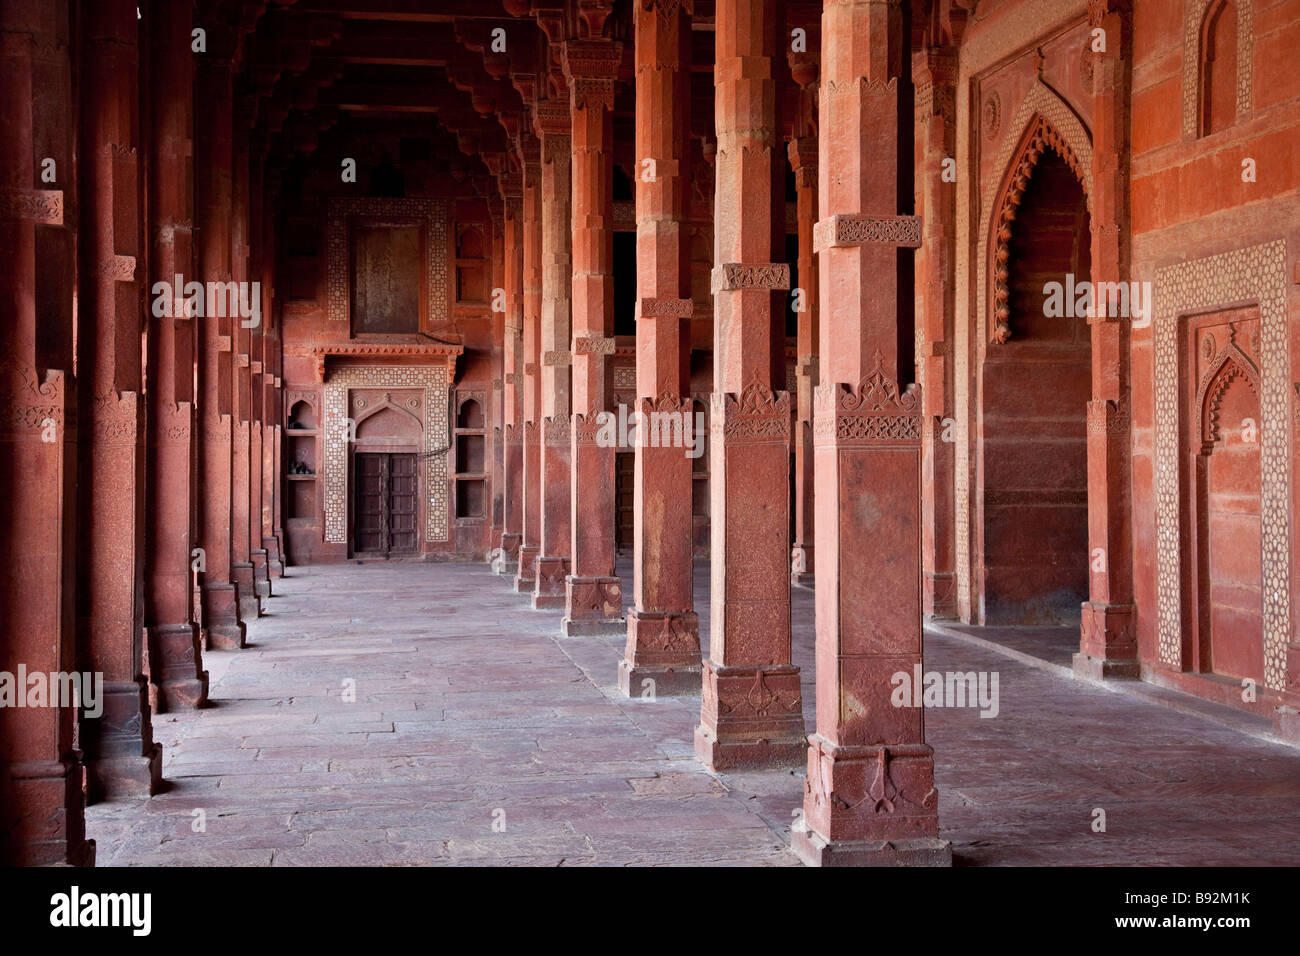 Im Inneren der Moschee in Fatehpur Sikri in Uttar Pradesh, Indien Stockfoto